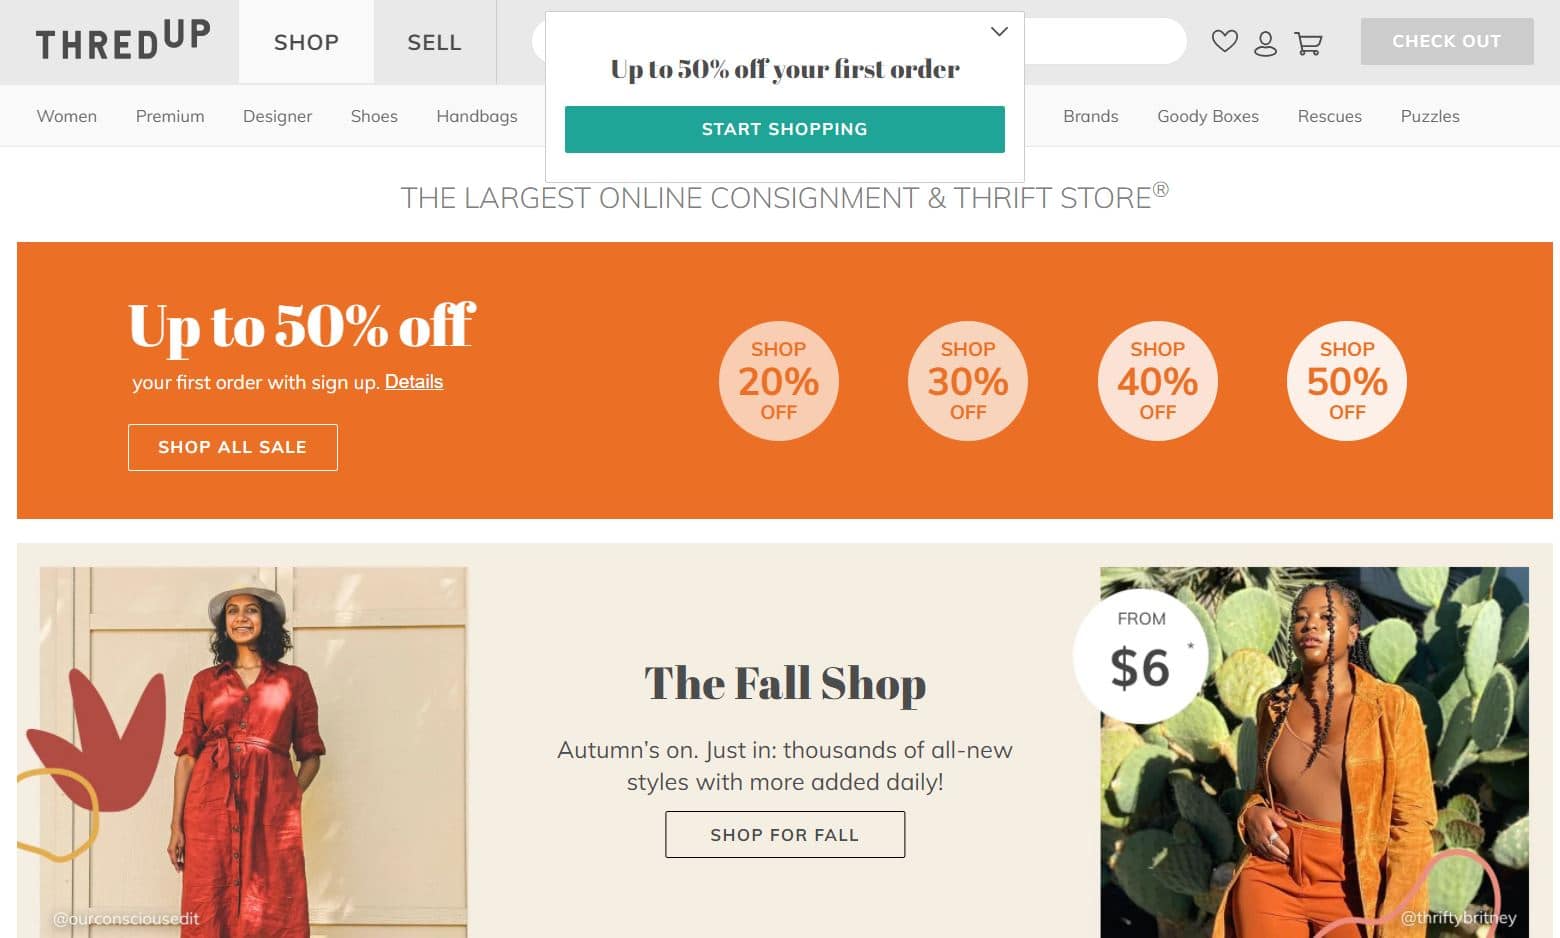 Best Online Thrift Stores